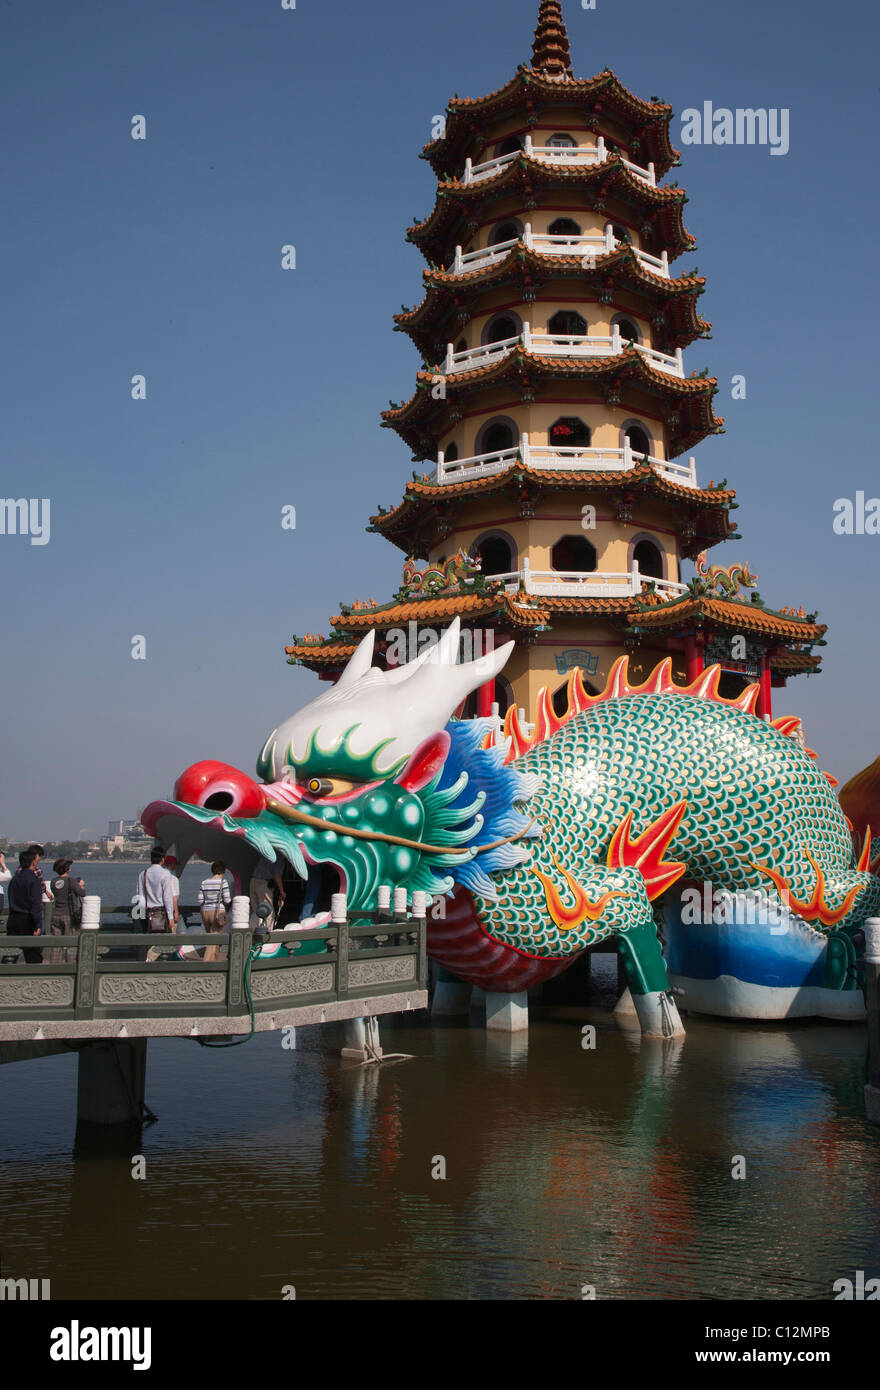 Dragon Temple at Lotus Lake Kaohsiung Taiwan Stock Photo